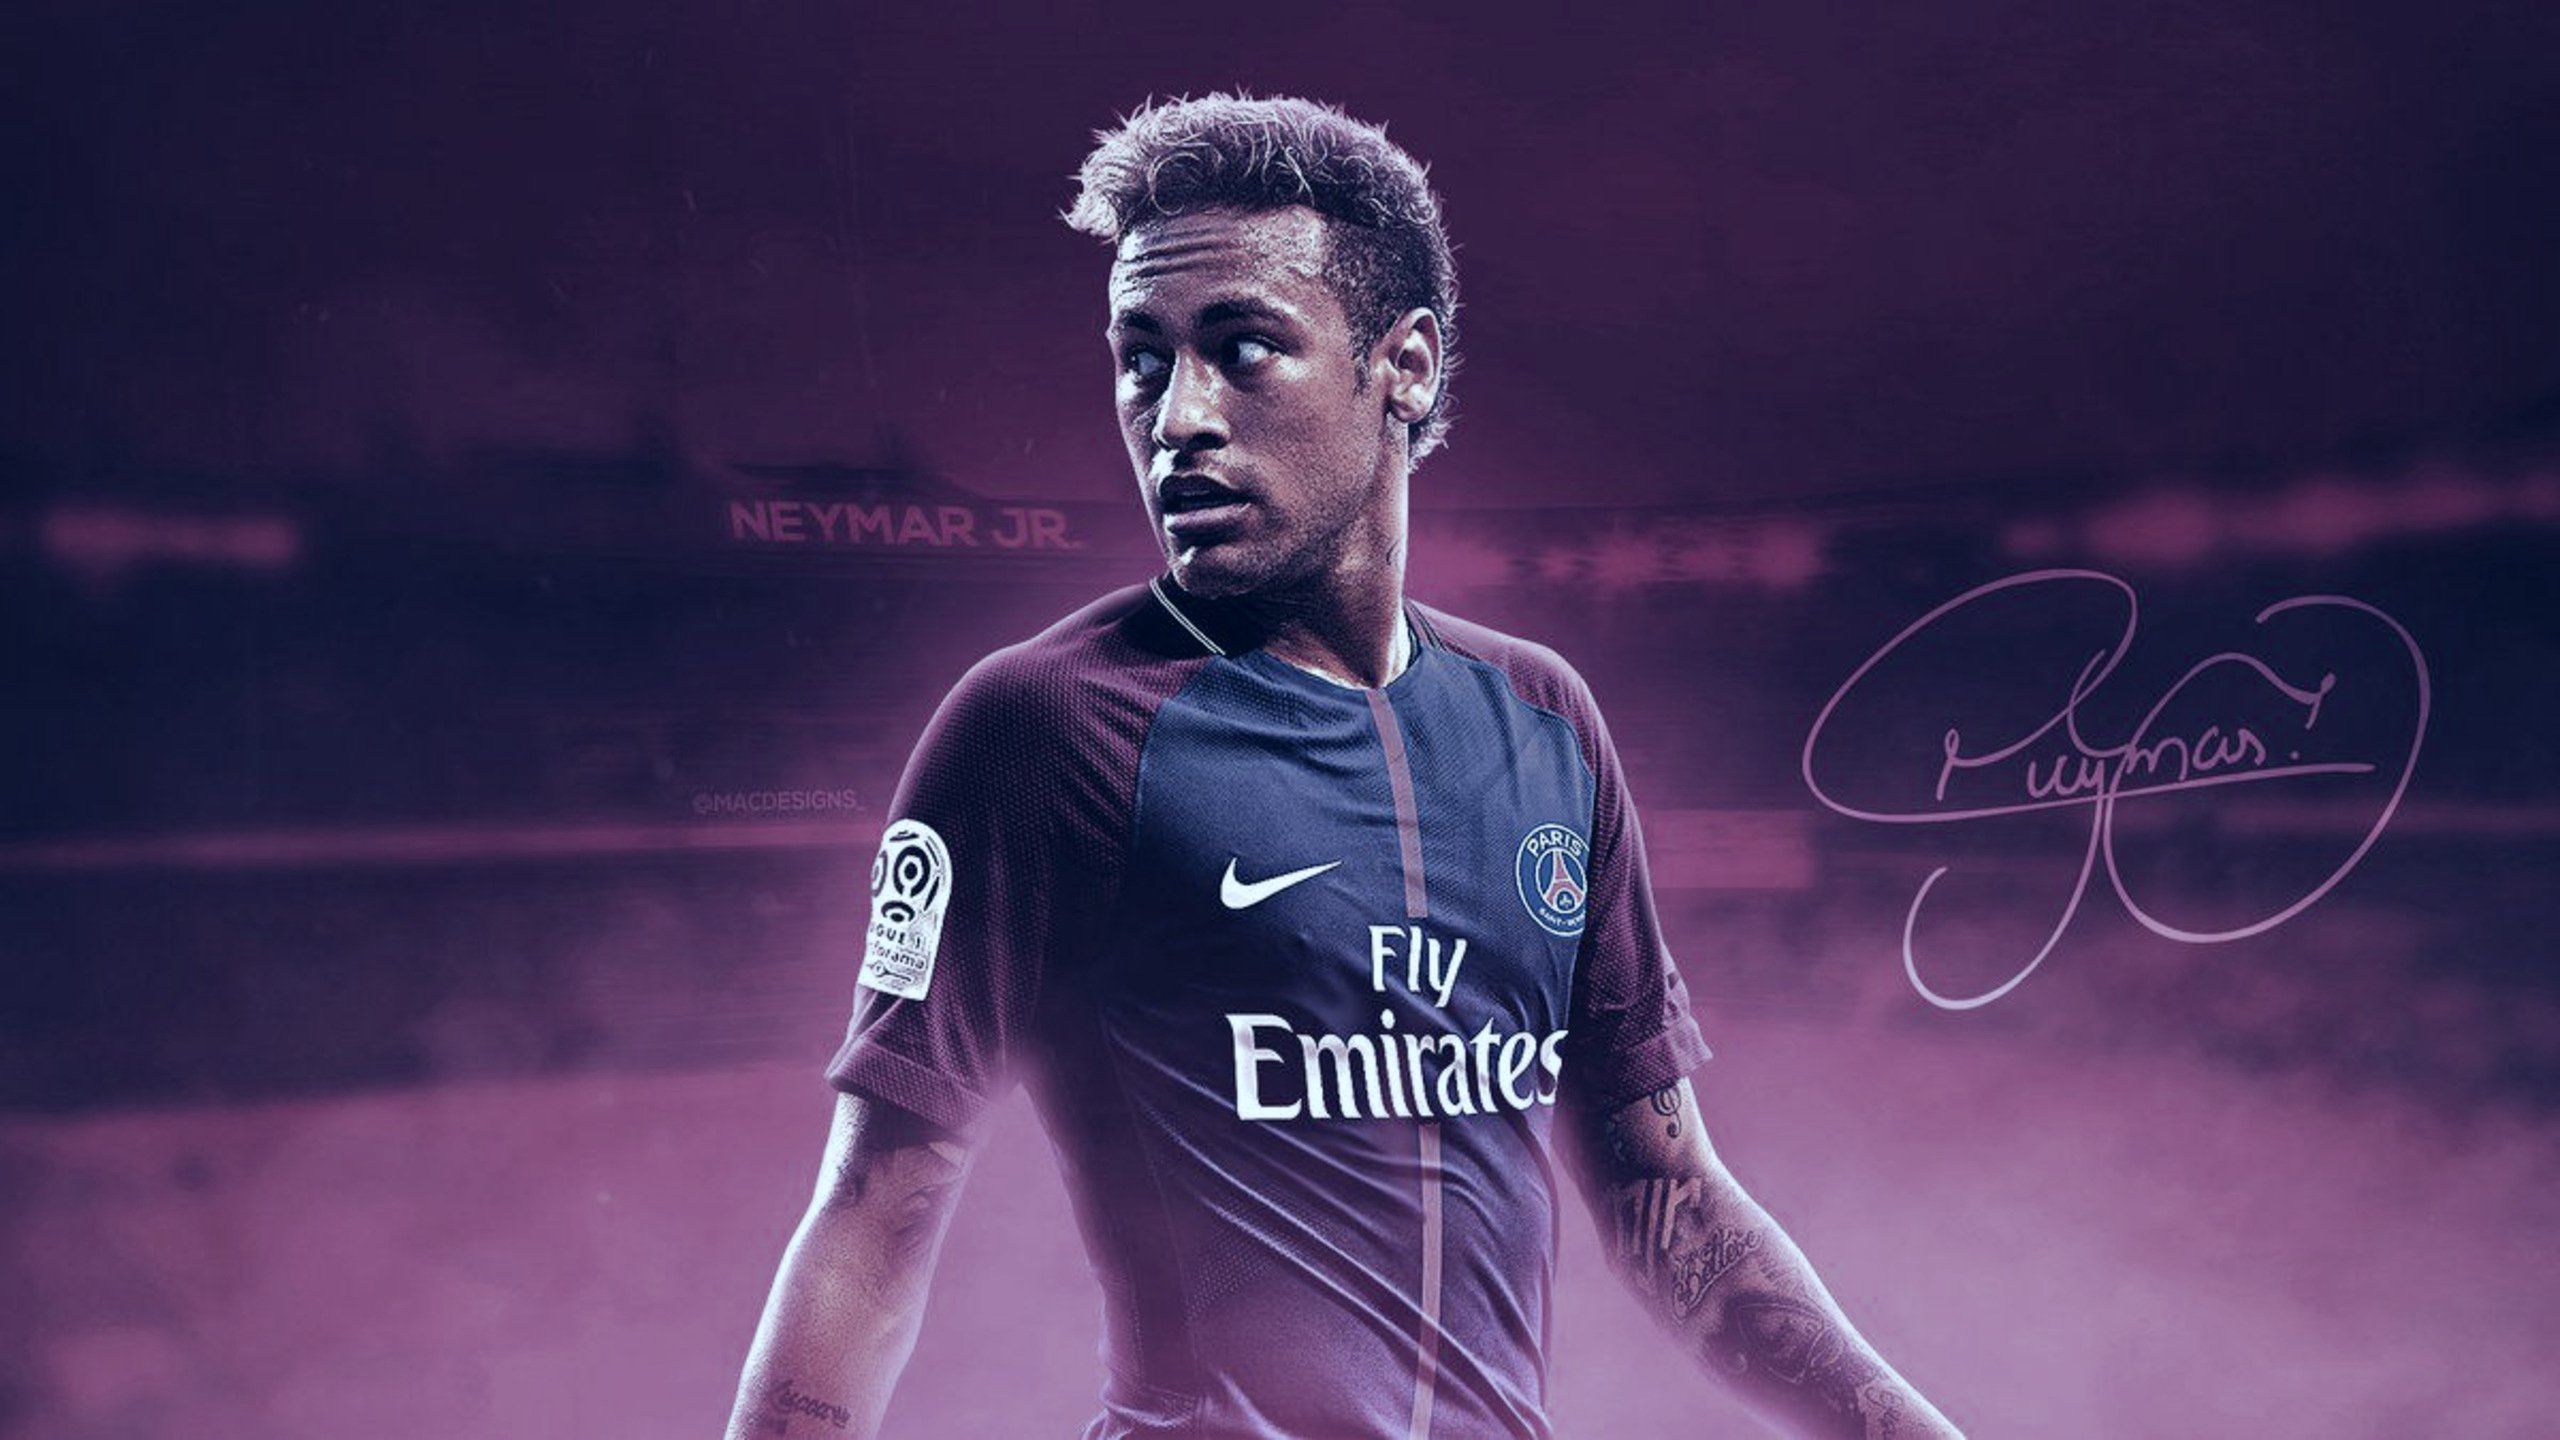 Neymar Jr Wallpaper Hd - HD Wallpaper 